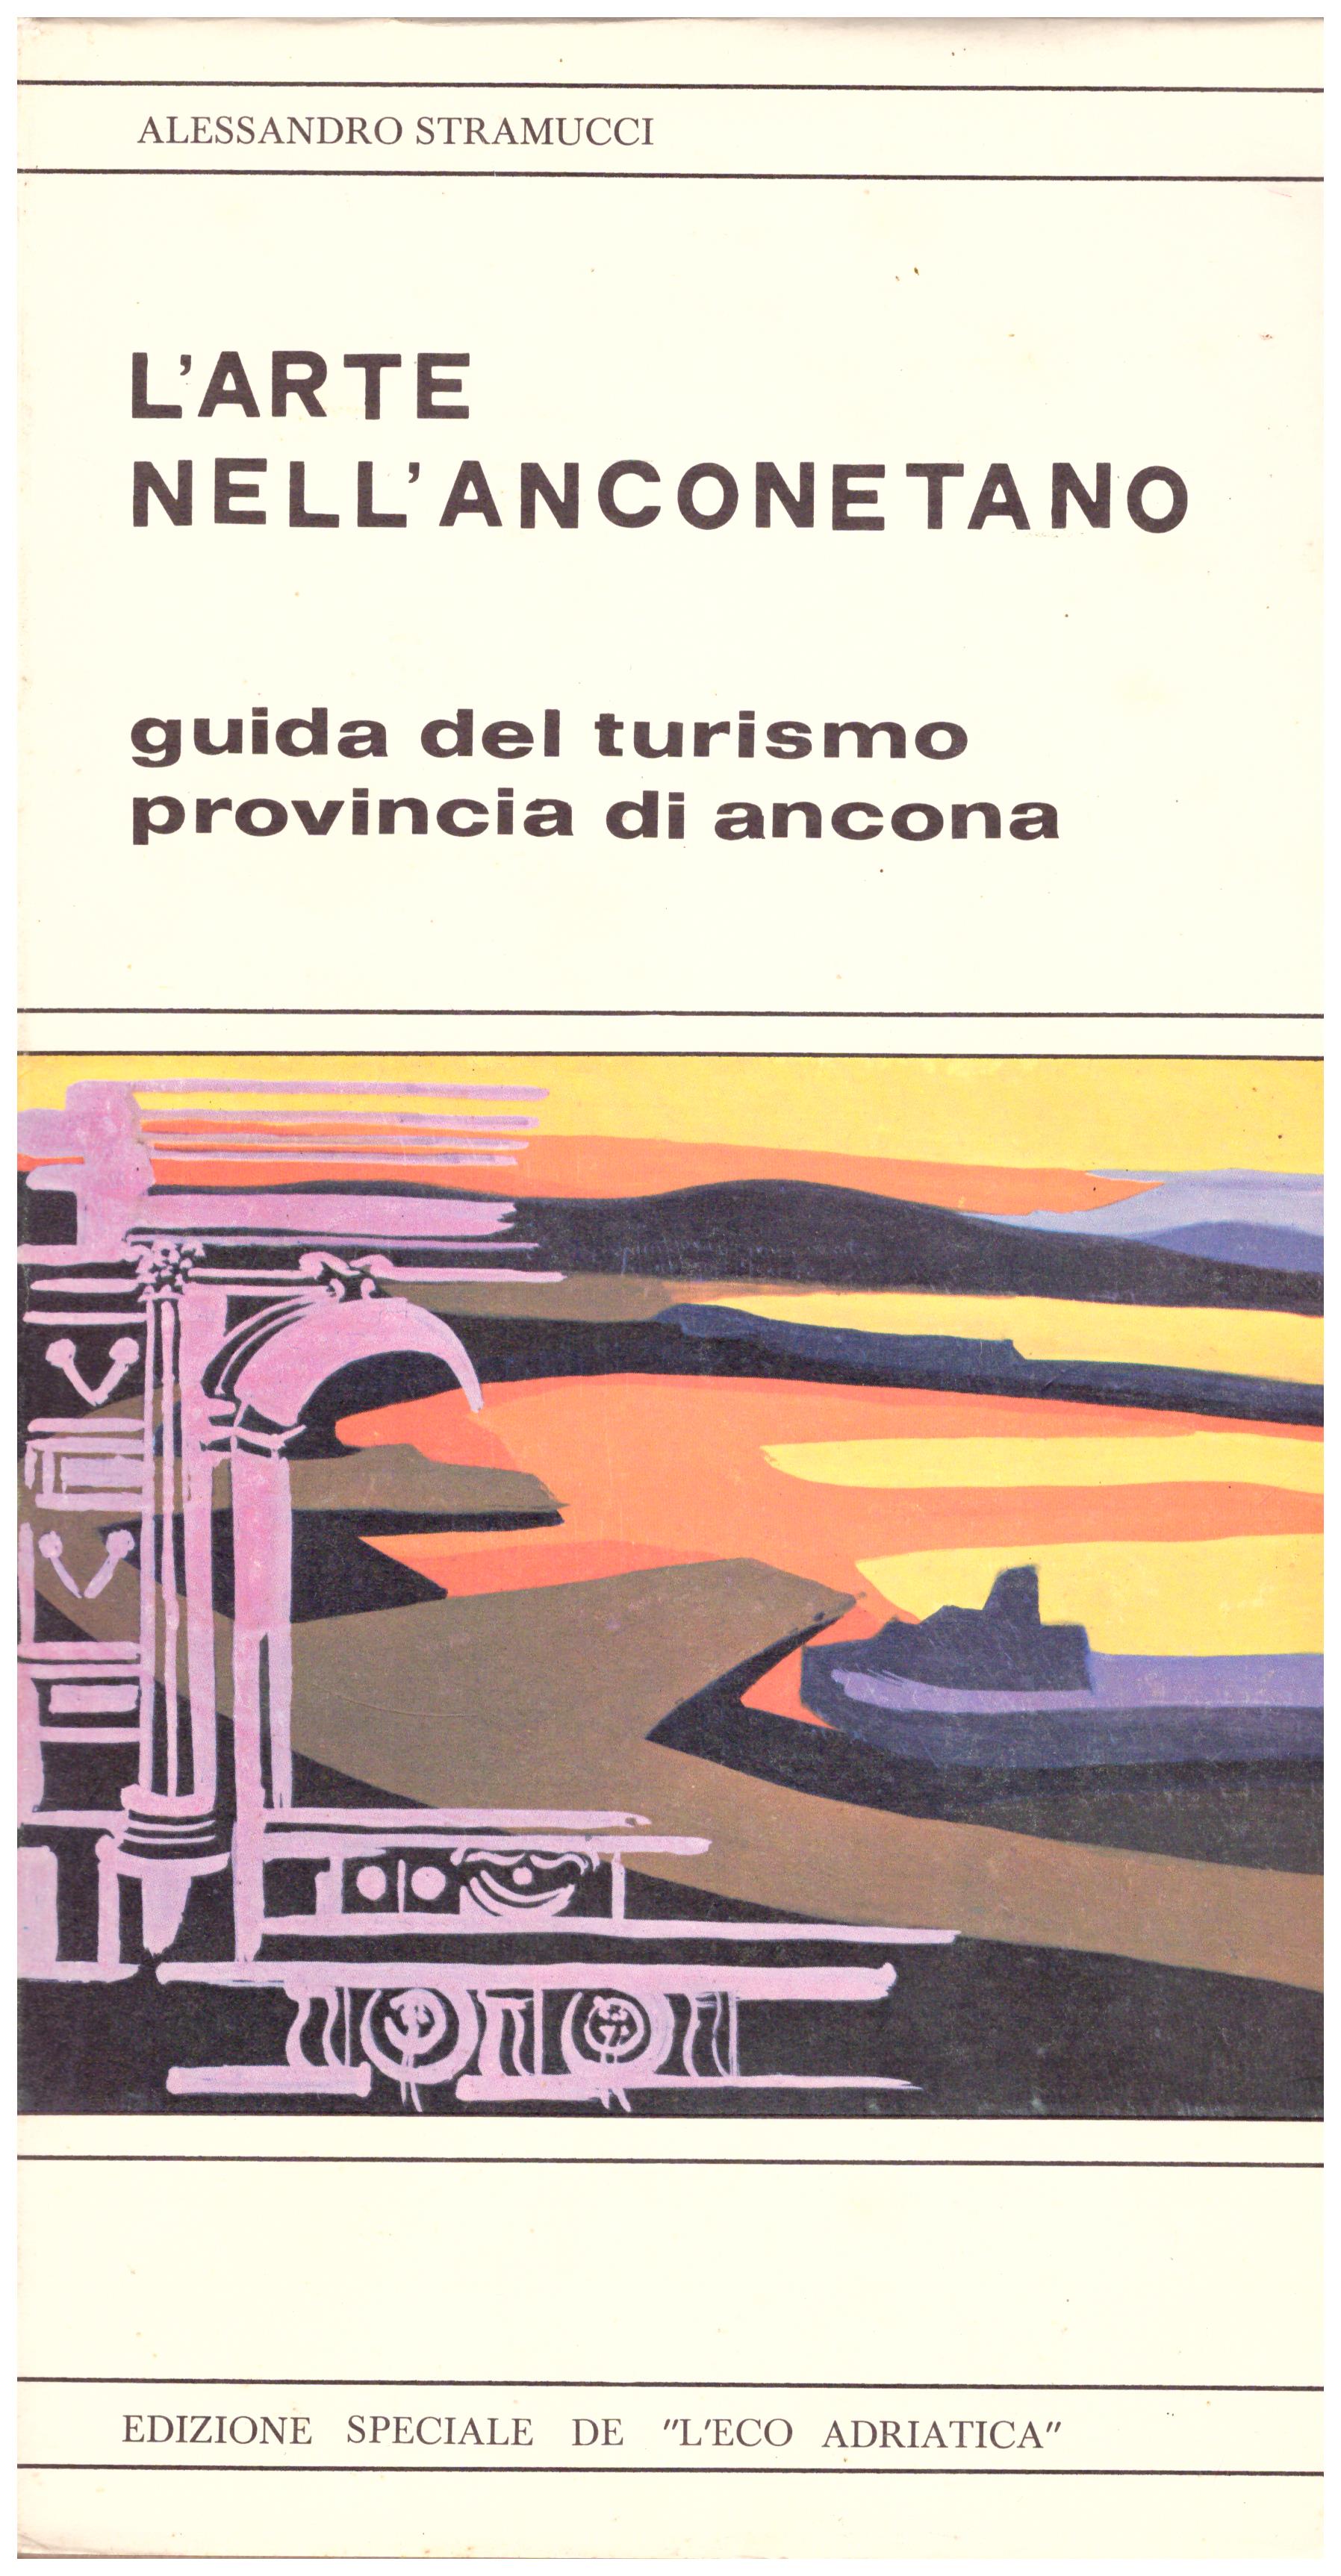 Titolo: L'arte nell'anconetano Autore: Alessandro Stramucci Editore: edizione speciale de "L'eco Adriatica", 1972